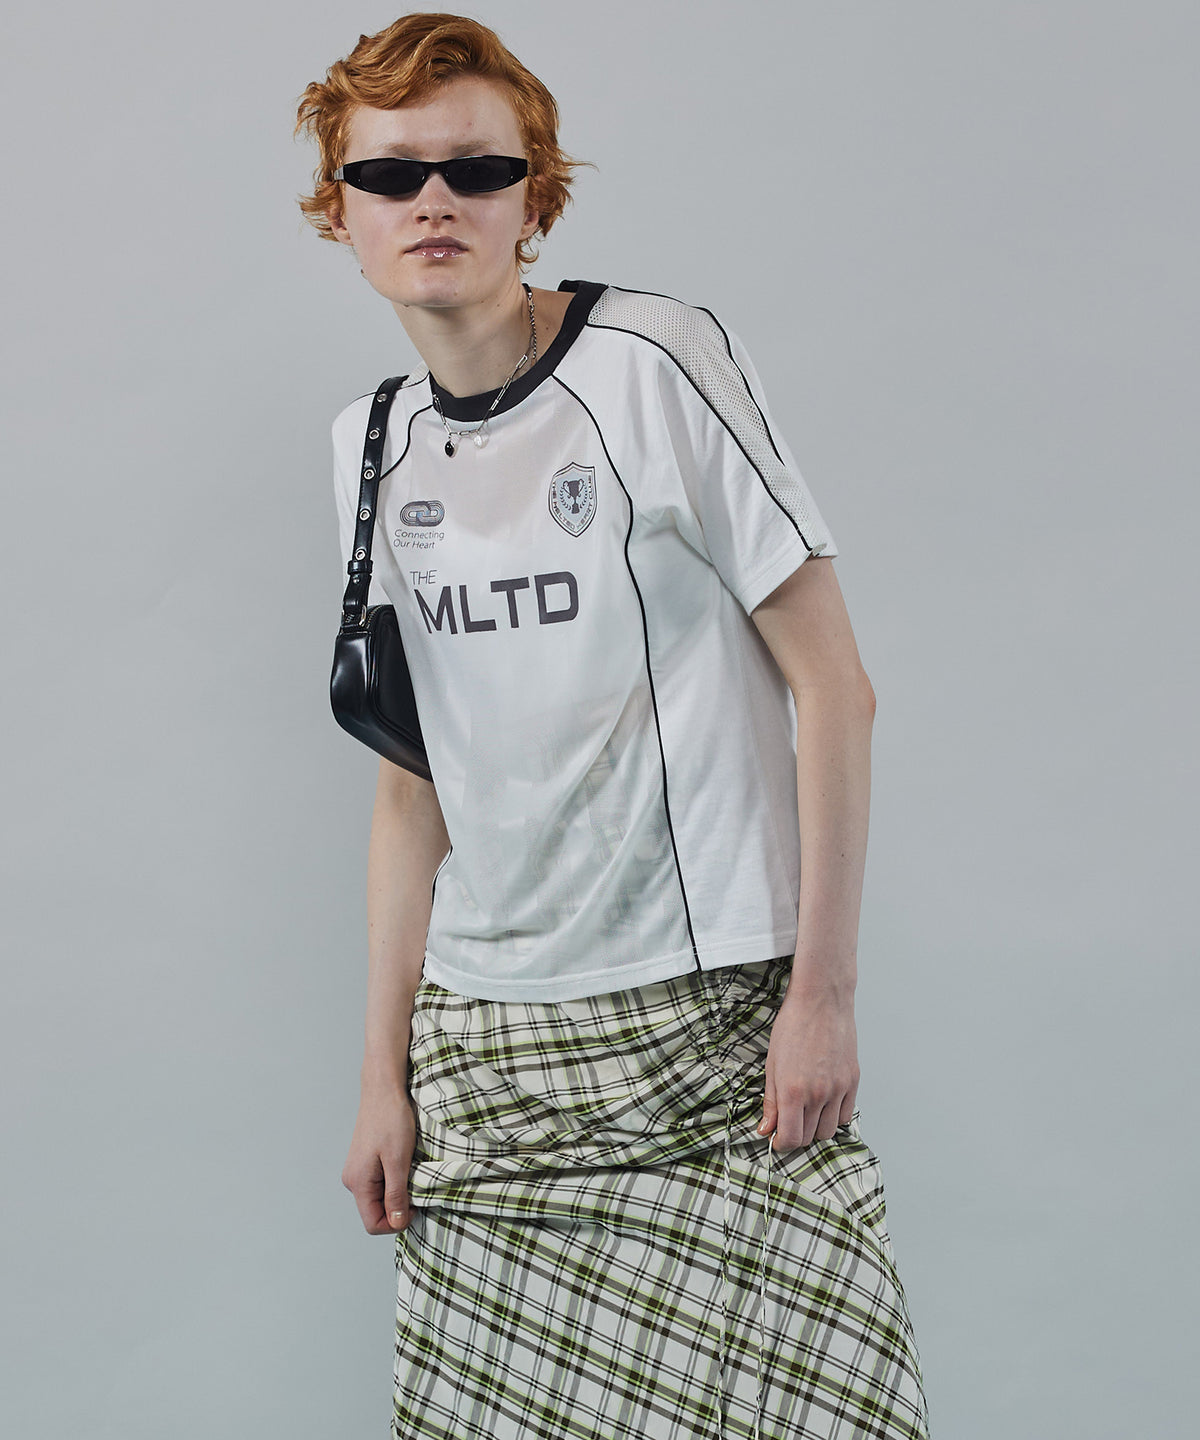 【24SUMMER PRE-ORDER】MLTD Uniform T-shirt